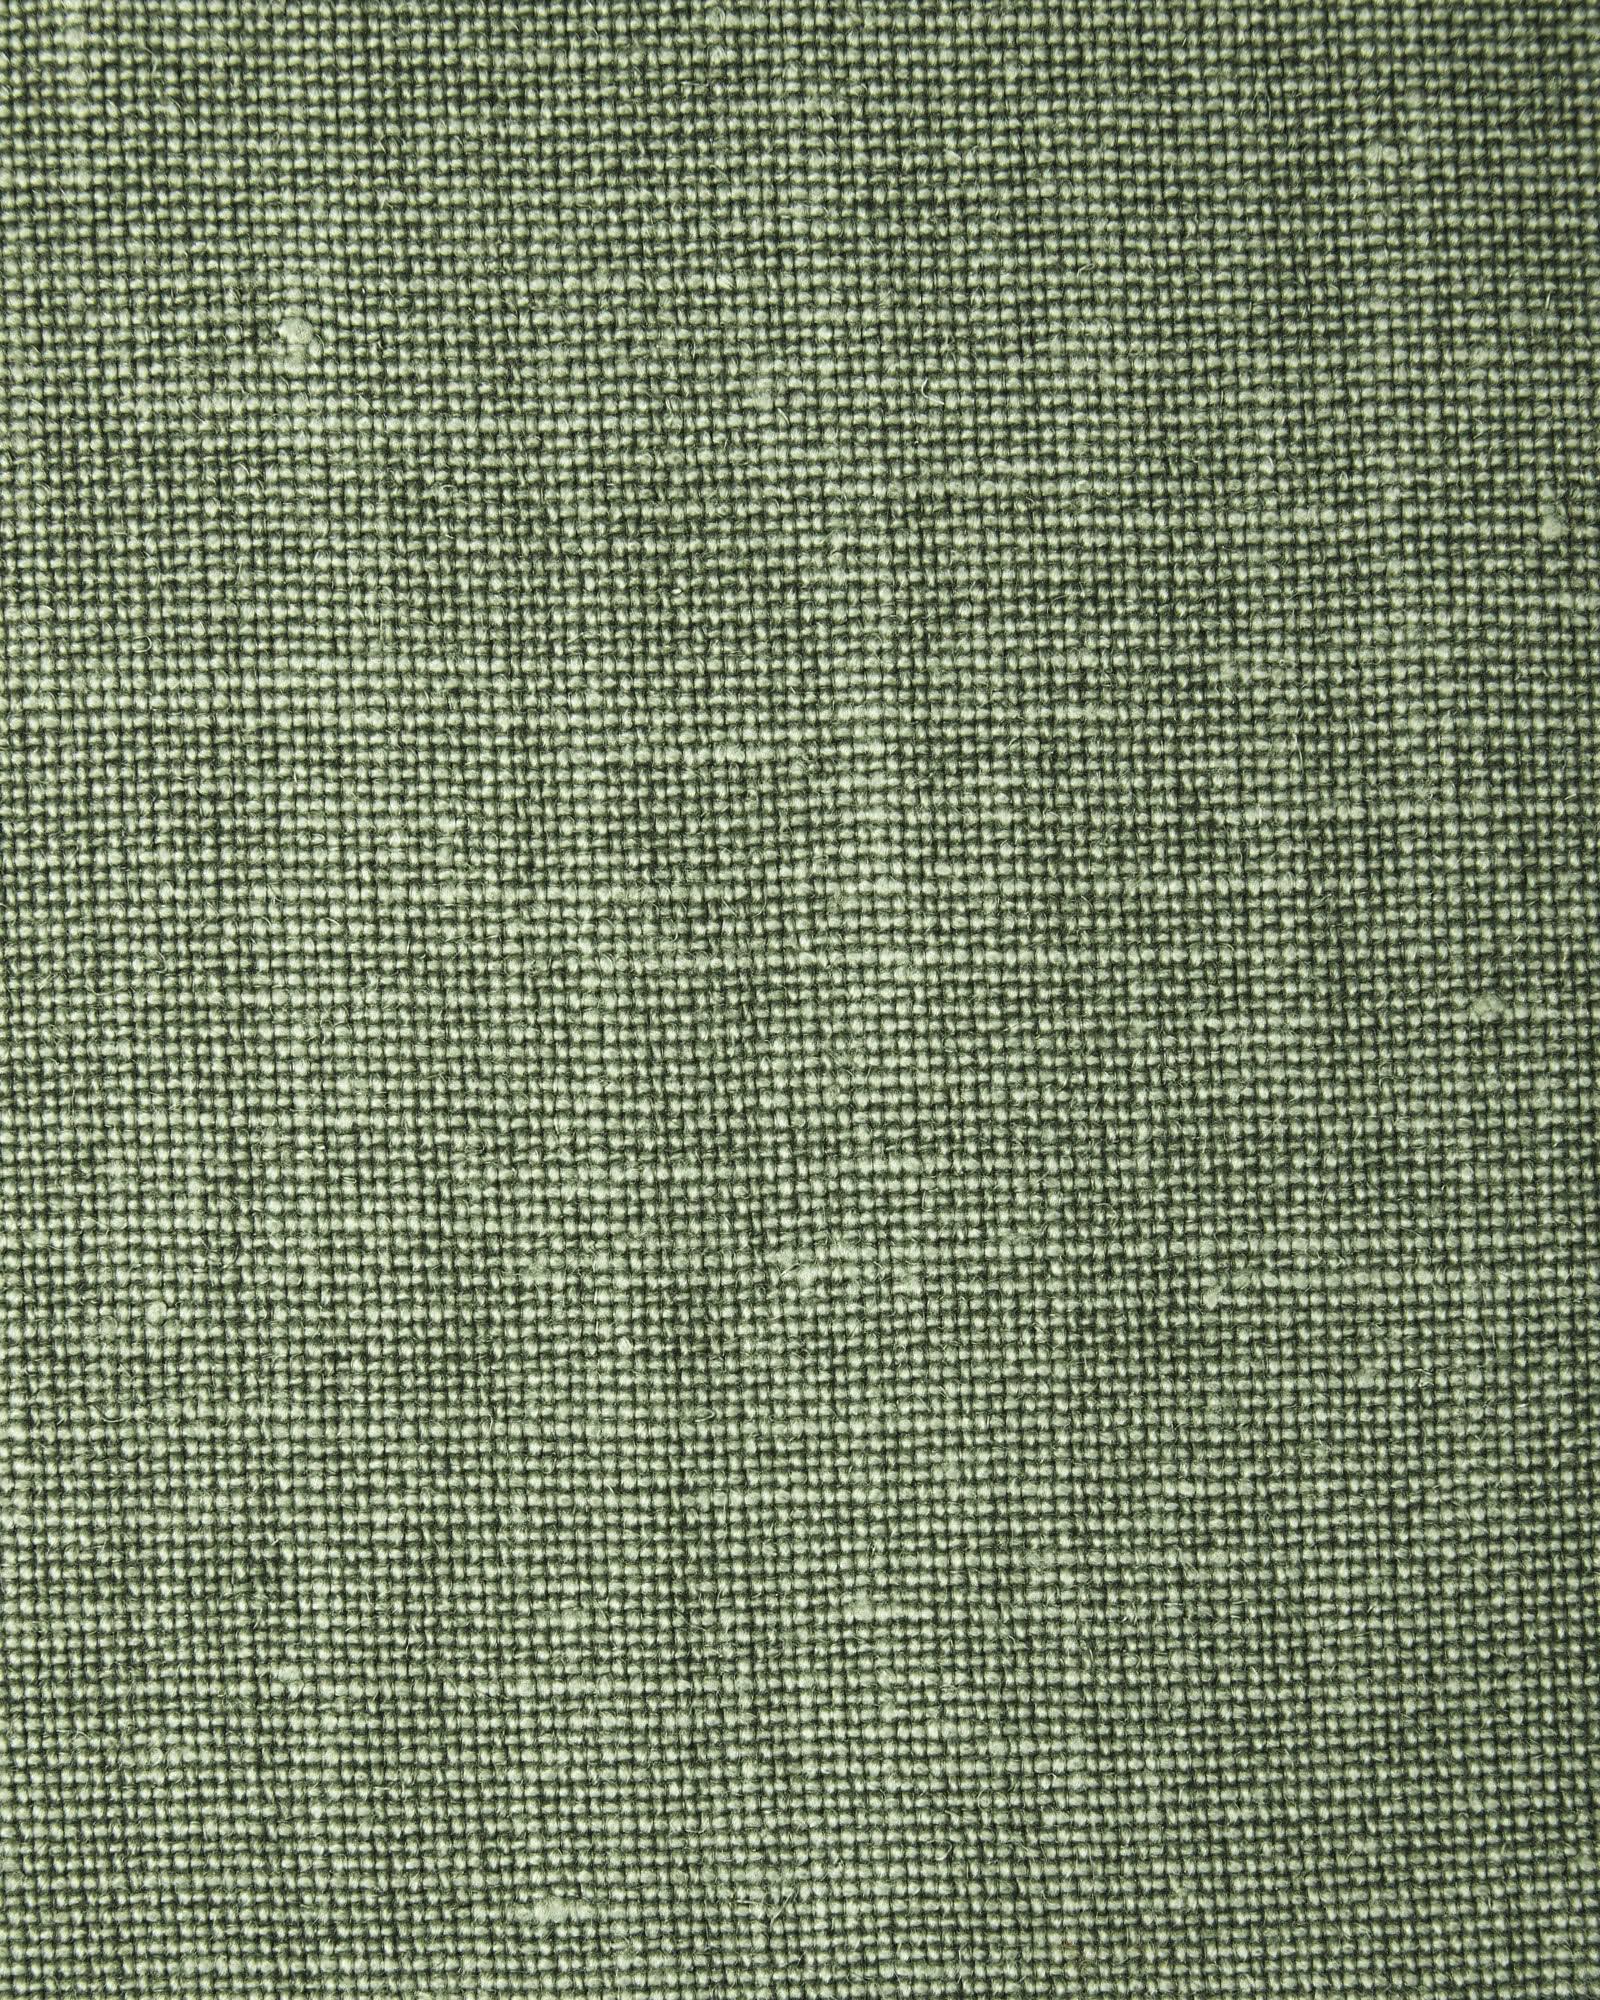 Green Fabric, Solid Cotton Fabric, Grass Green, Linen Texture